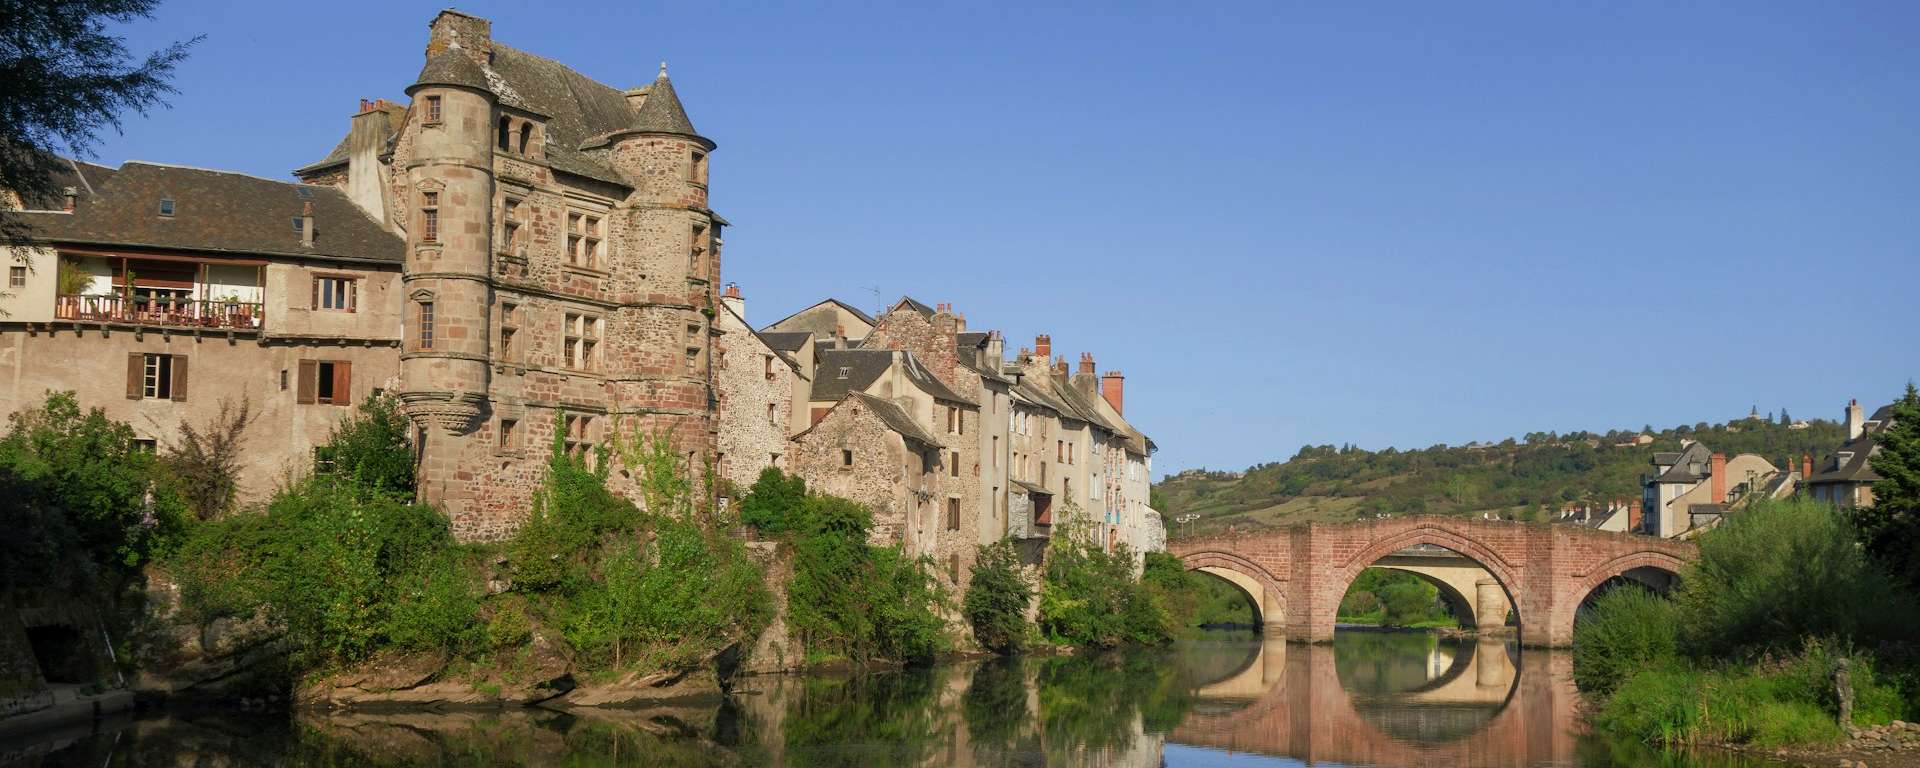 villes et villages en Aveyron (Espalion, Occitanie)